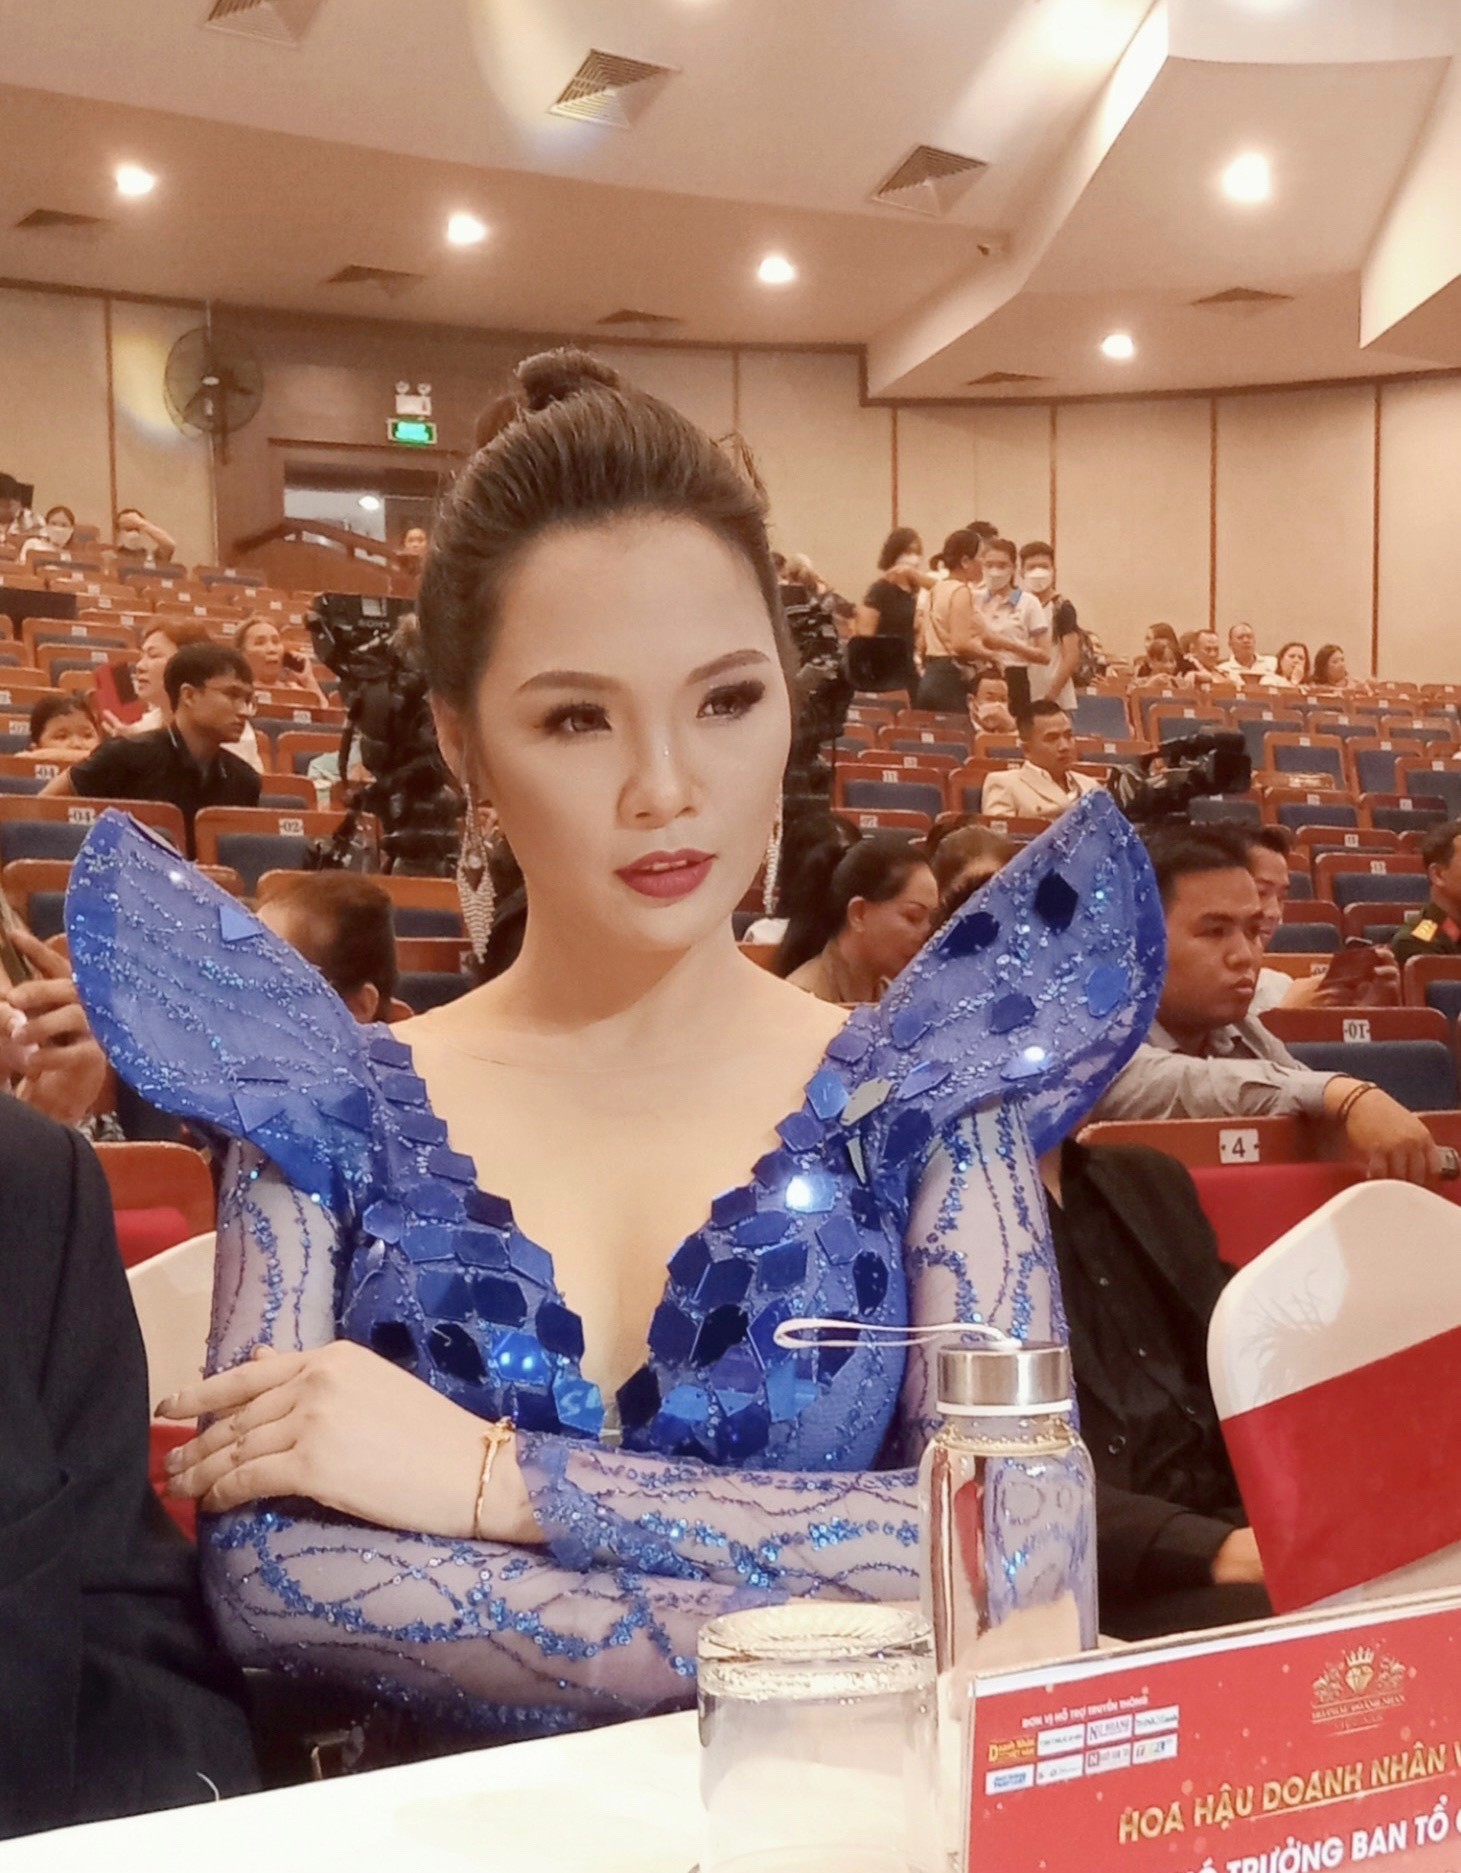 CEO, Á hậu Trang Viên cố vấn truyền thông cho cuộc thi Hoa hậu Doanh nhân Việt Nam 2022